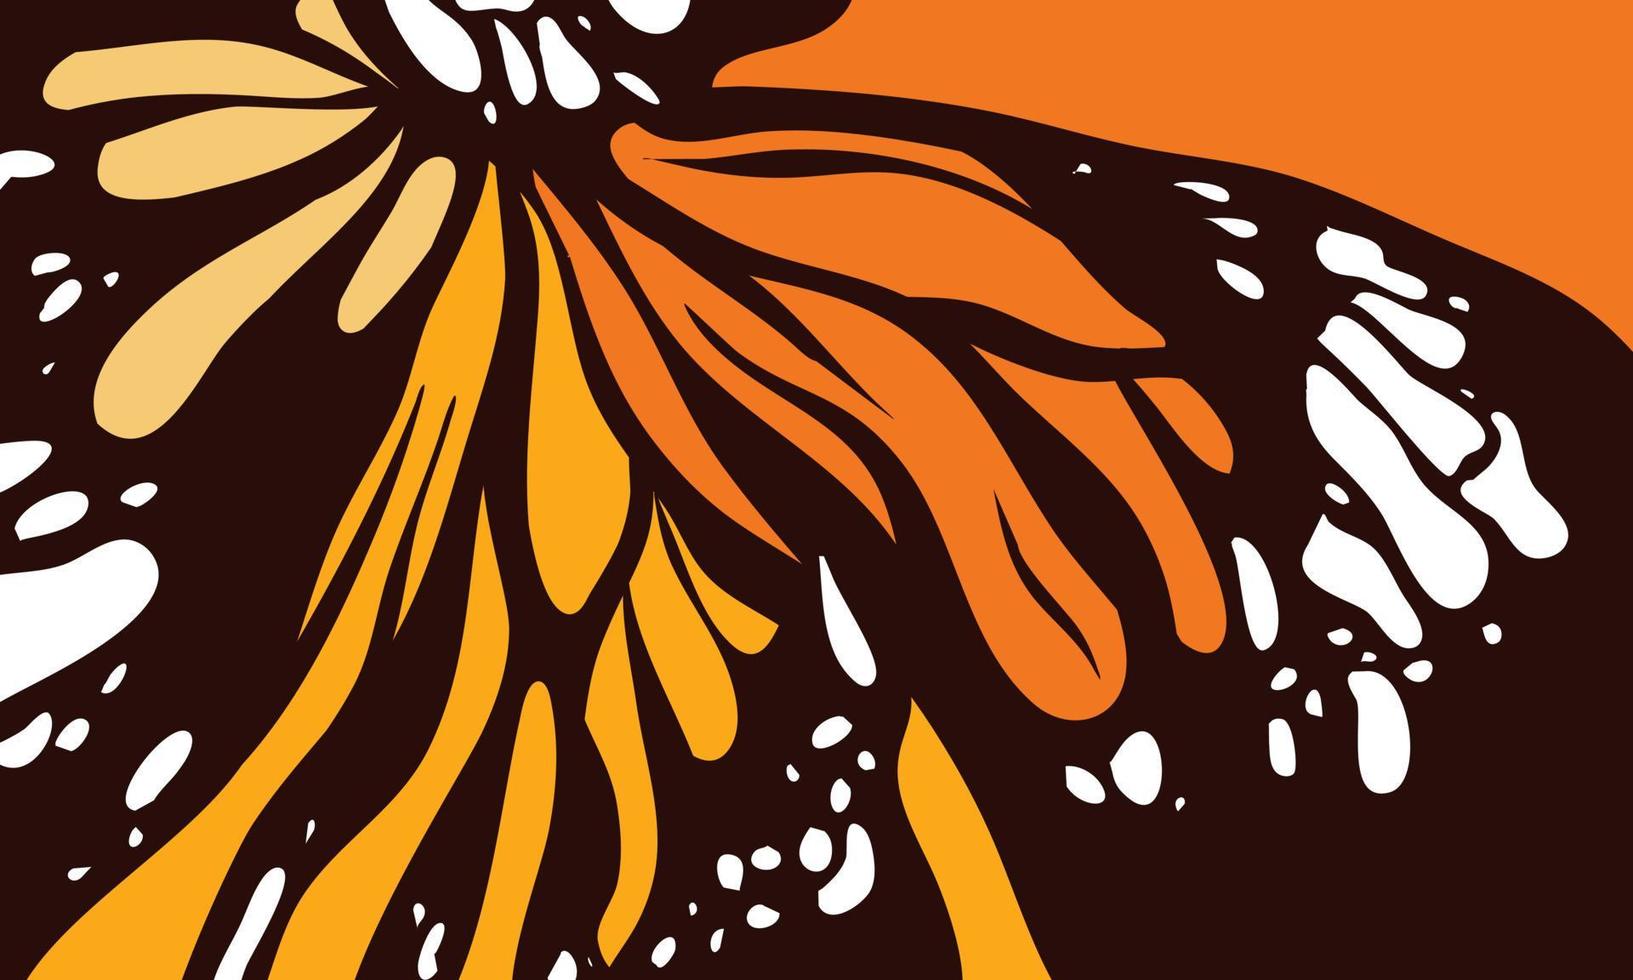 vetor de estilo de cor de borboleta com fundo preto. asas de borboleta com gradação de cor laranja. modelos de design para plano de fundo, mídia social, modelo, pôster, convite, design de cartão e muito mais